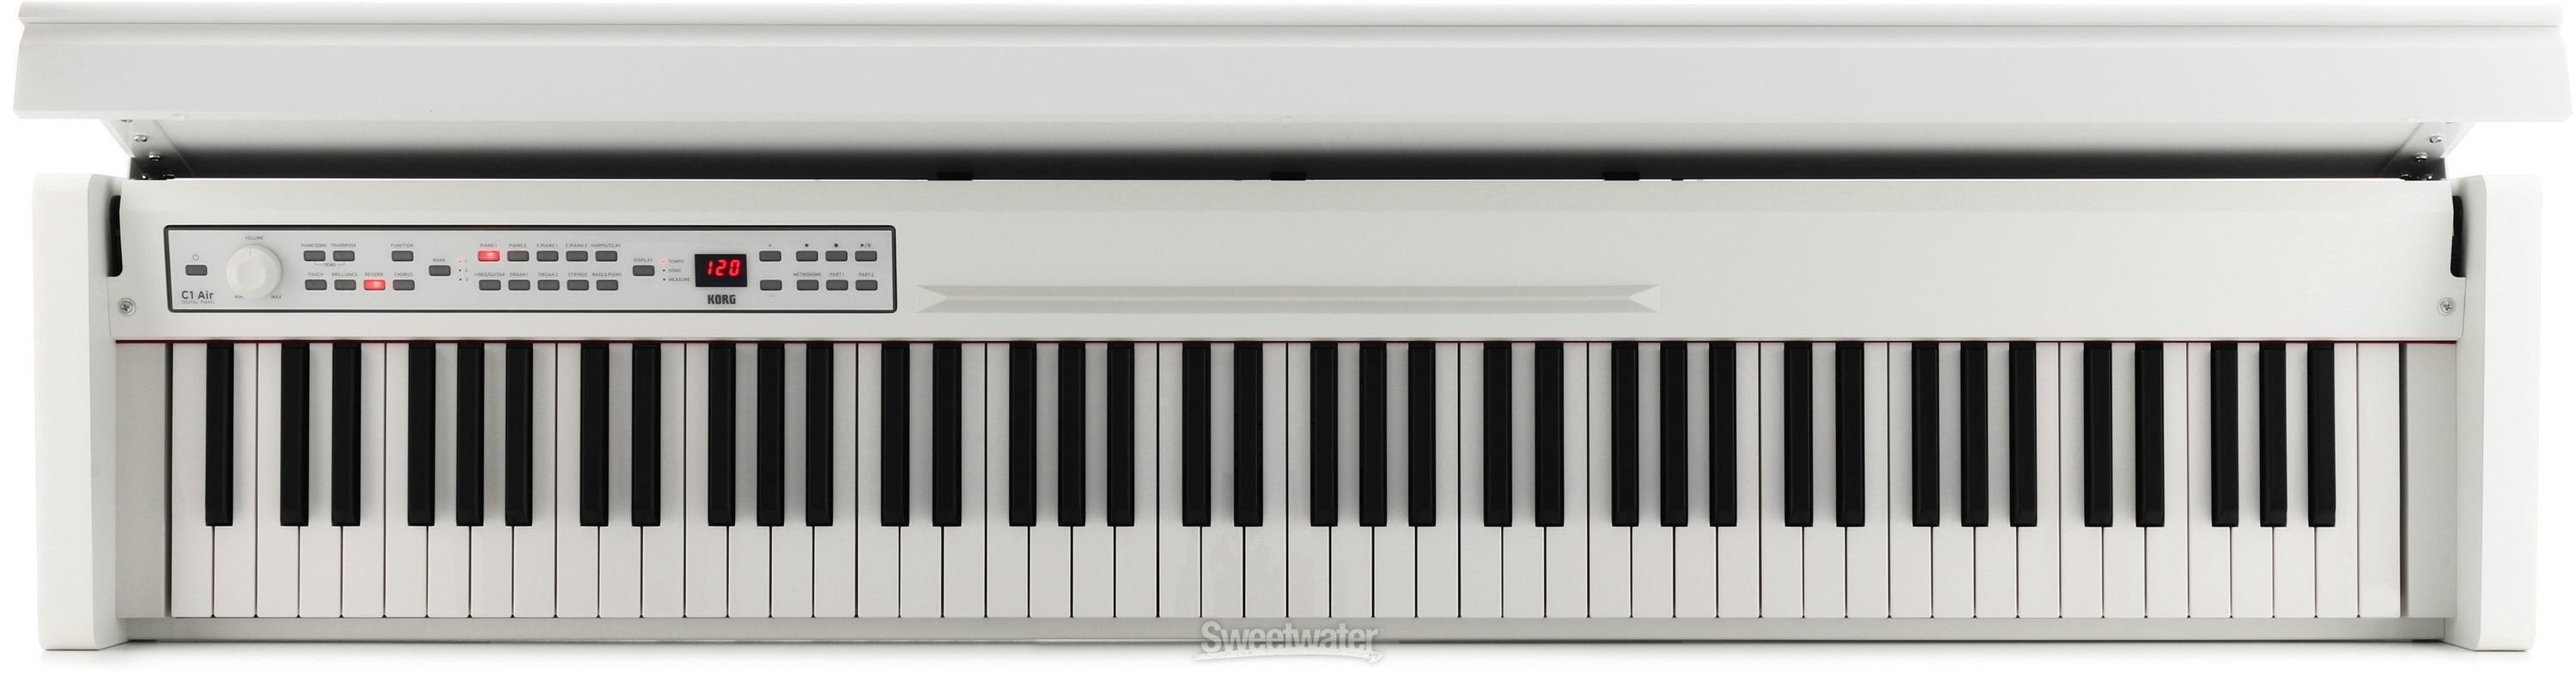 KORG  C1 Air WA  ホワイトアッシュ  コルグ電子ピアノ  高低椅子(純正) ヘッドホン付